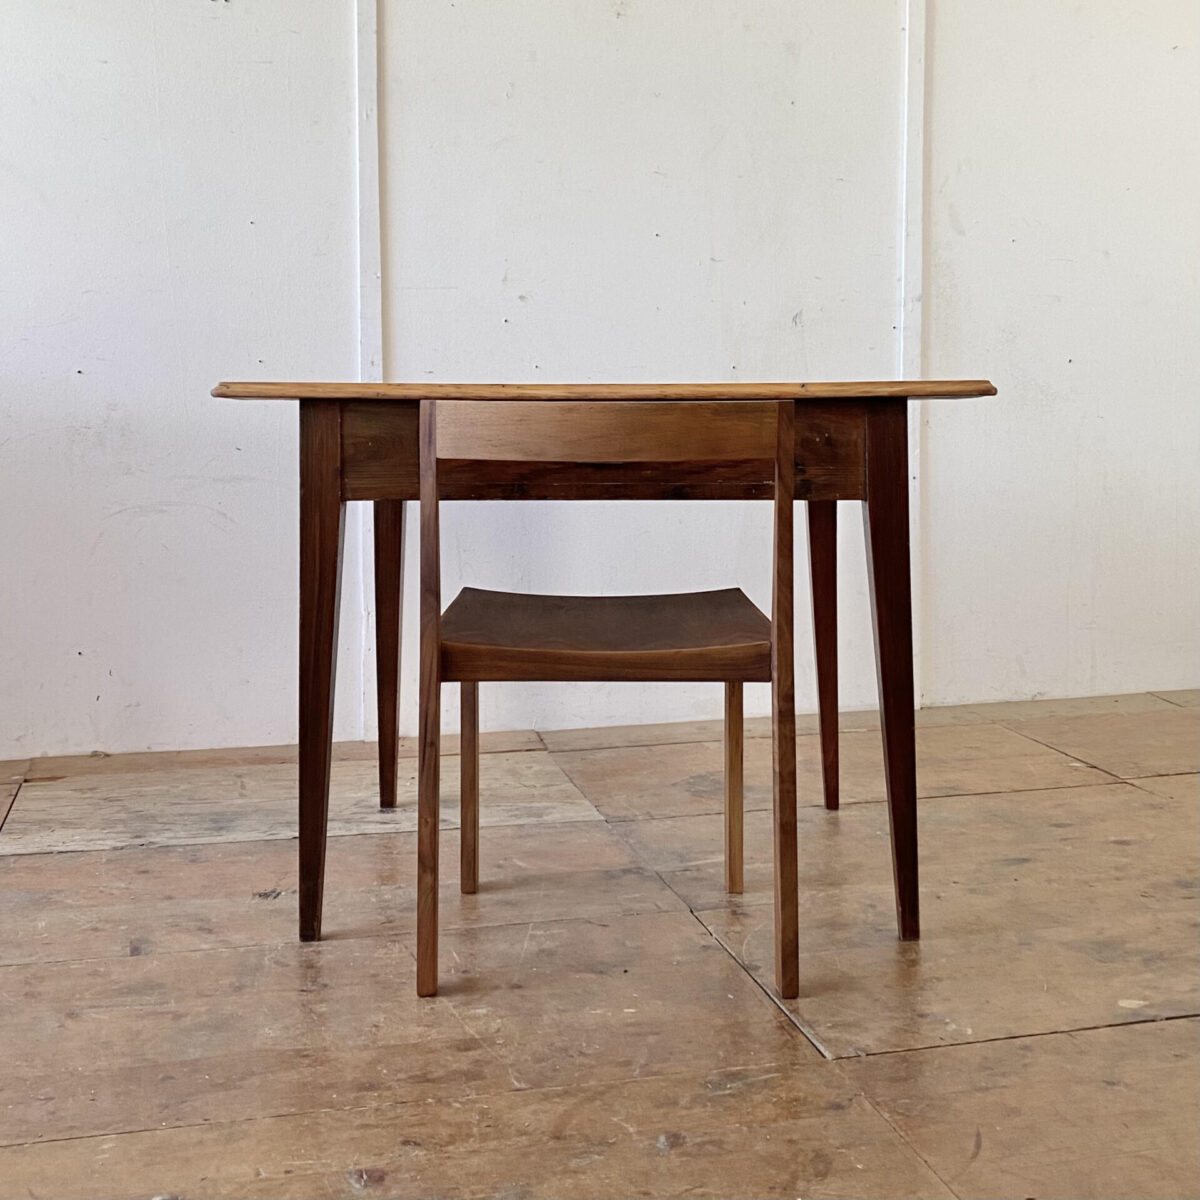 Deuxieme.shop alter Holztisch Tannenholz Schreibtisch mit Schublade. 104x75cm Höhe 74.5cm. Der Tisch Unterbau ist dunkel, Tischplatte Tannenholz mit Profilkante. 